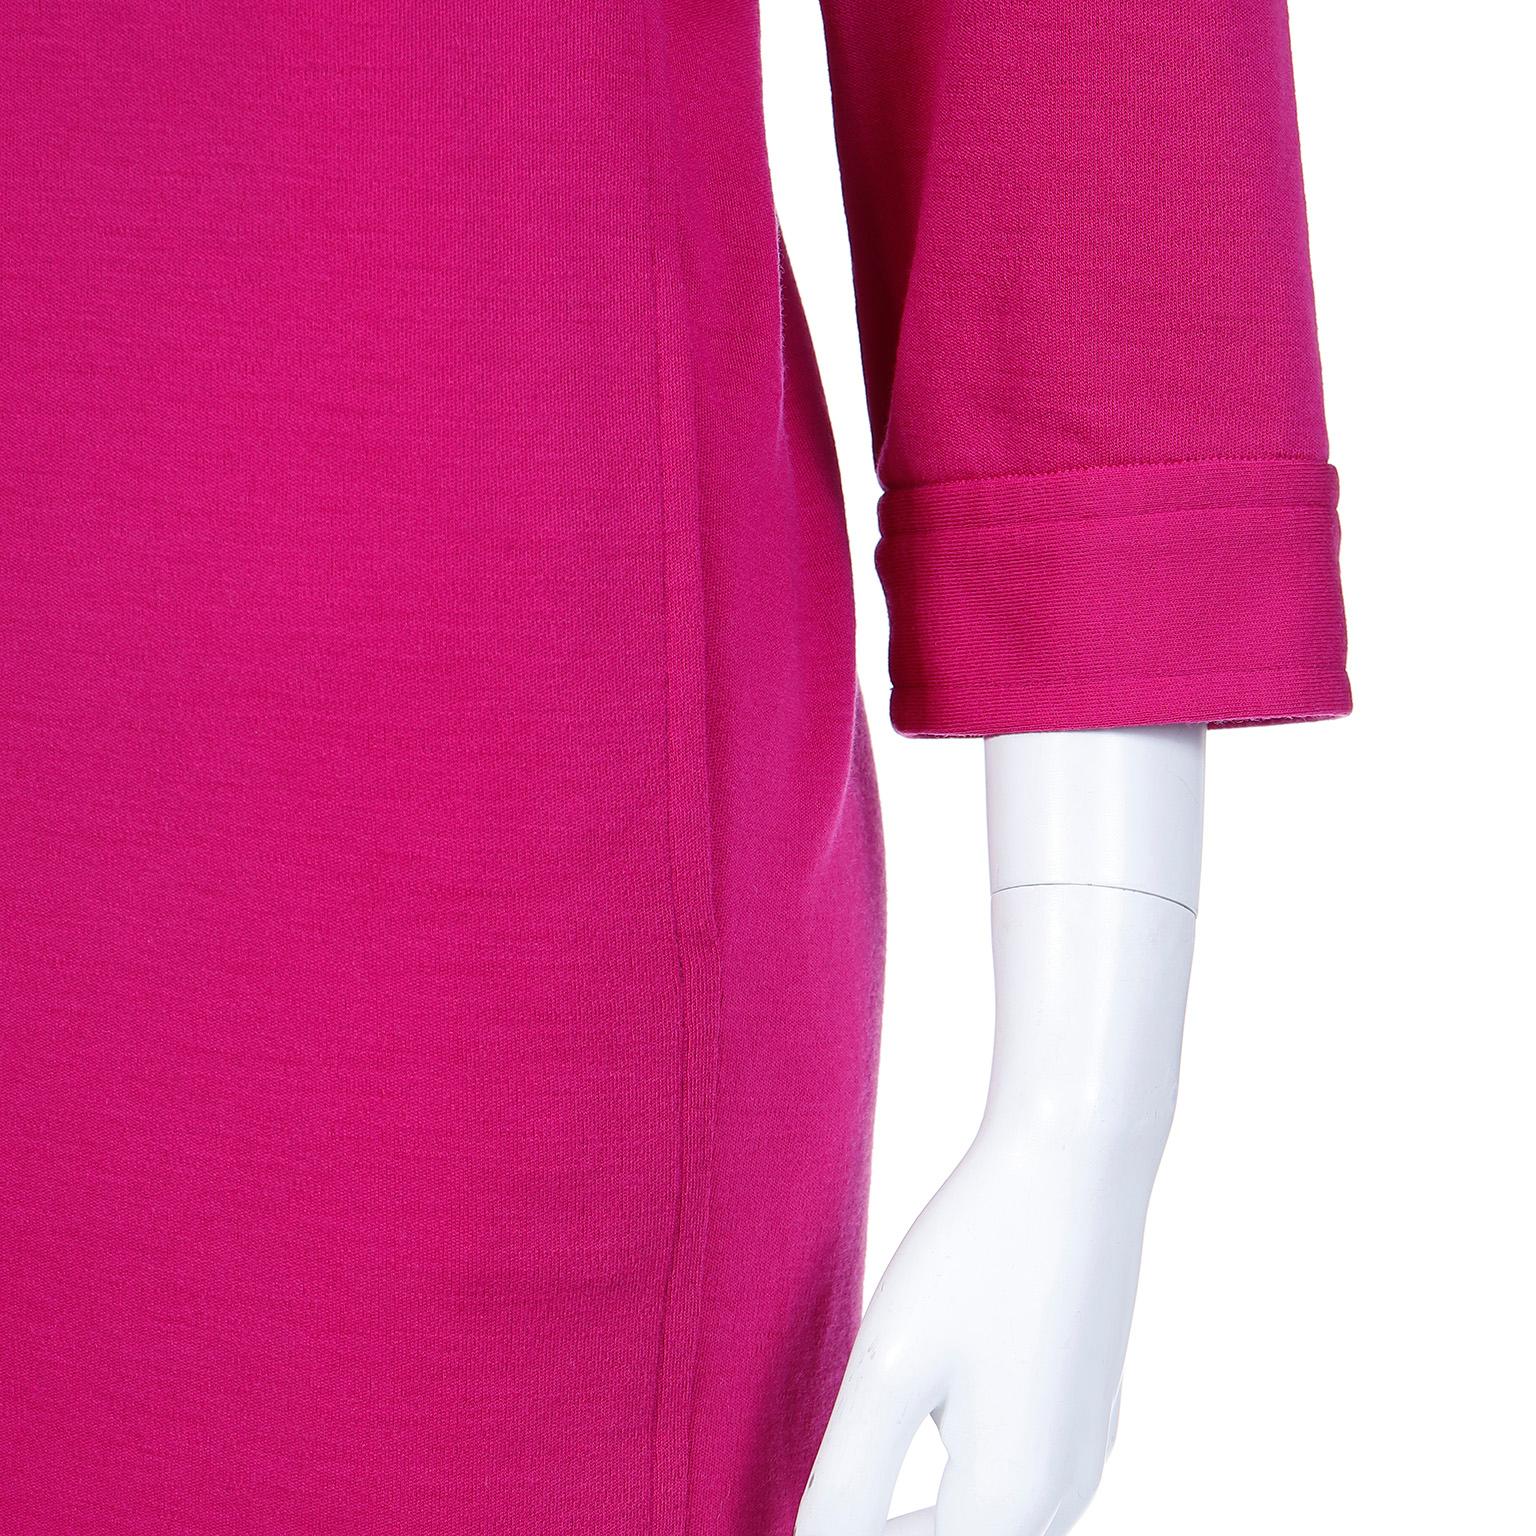 S/S 1990 Vintage Yves Saint Laurent Magenta Pink Wool Shift Dress For Sale 3